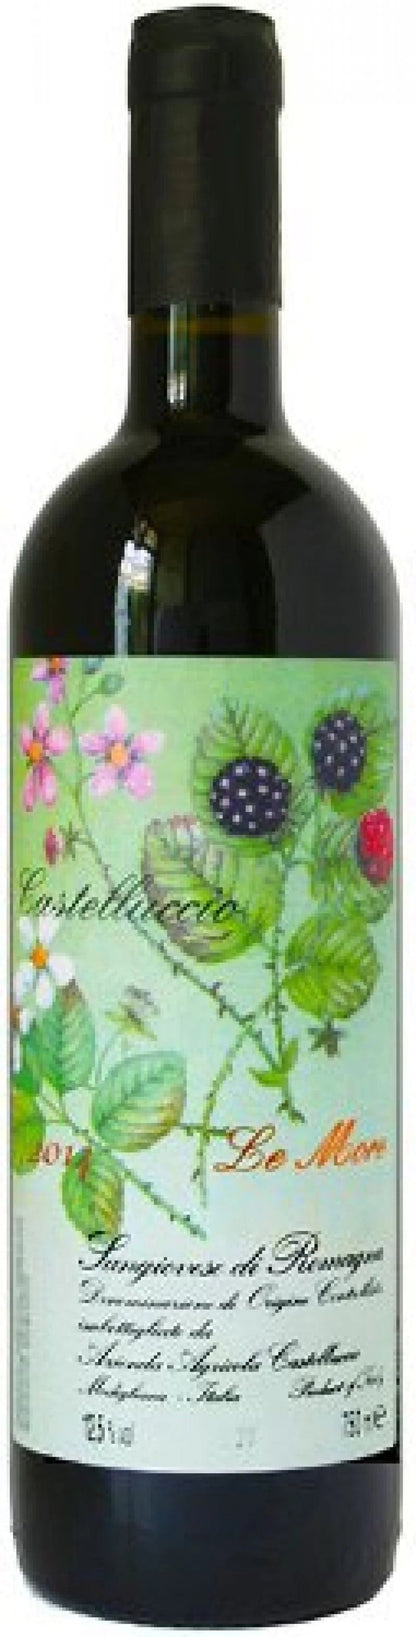 Wine Castelluccio Le More Sangiovese di Romagana Superiore DOC